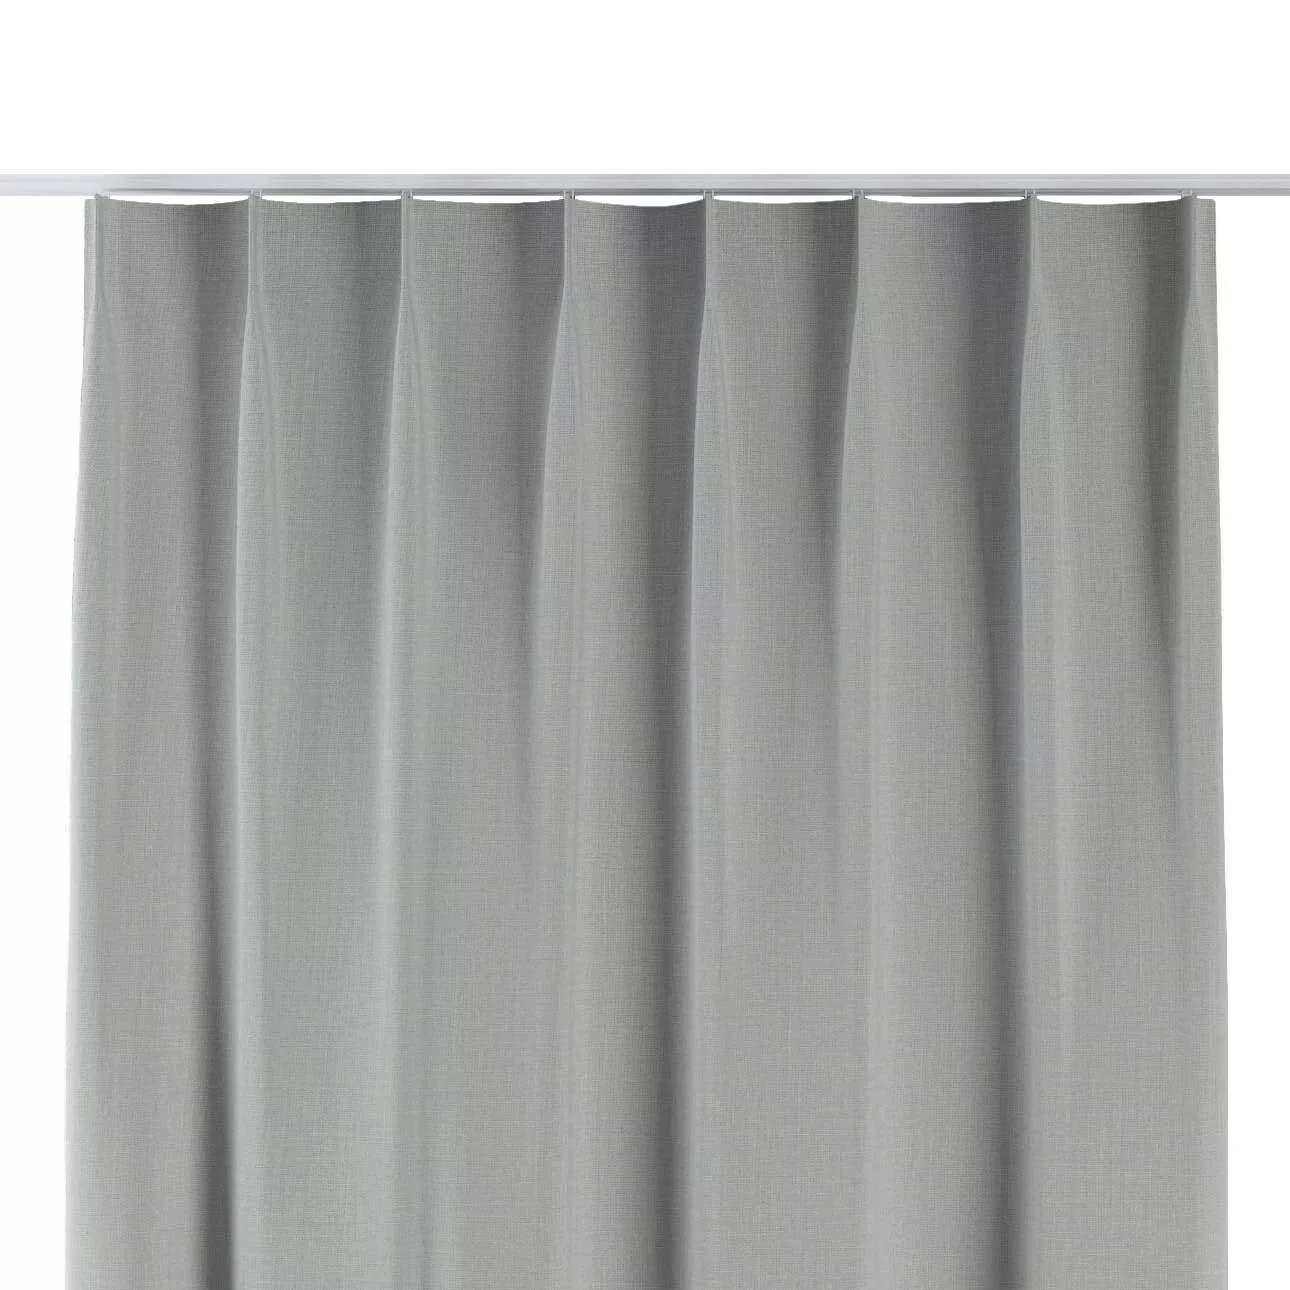 Vorhang mit flämischen 1-er Falten, grau, Blackout 300 cm (269-13) günstig online kaufen